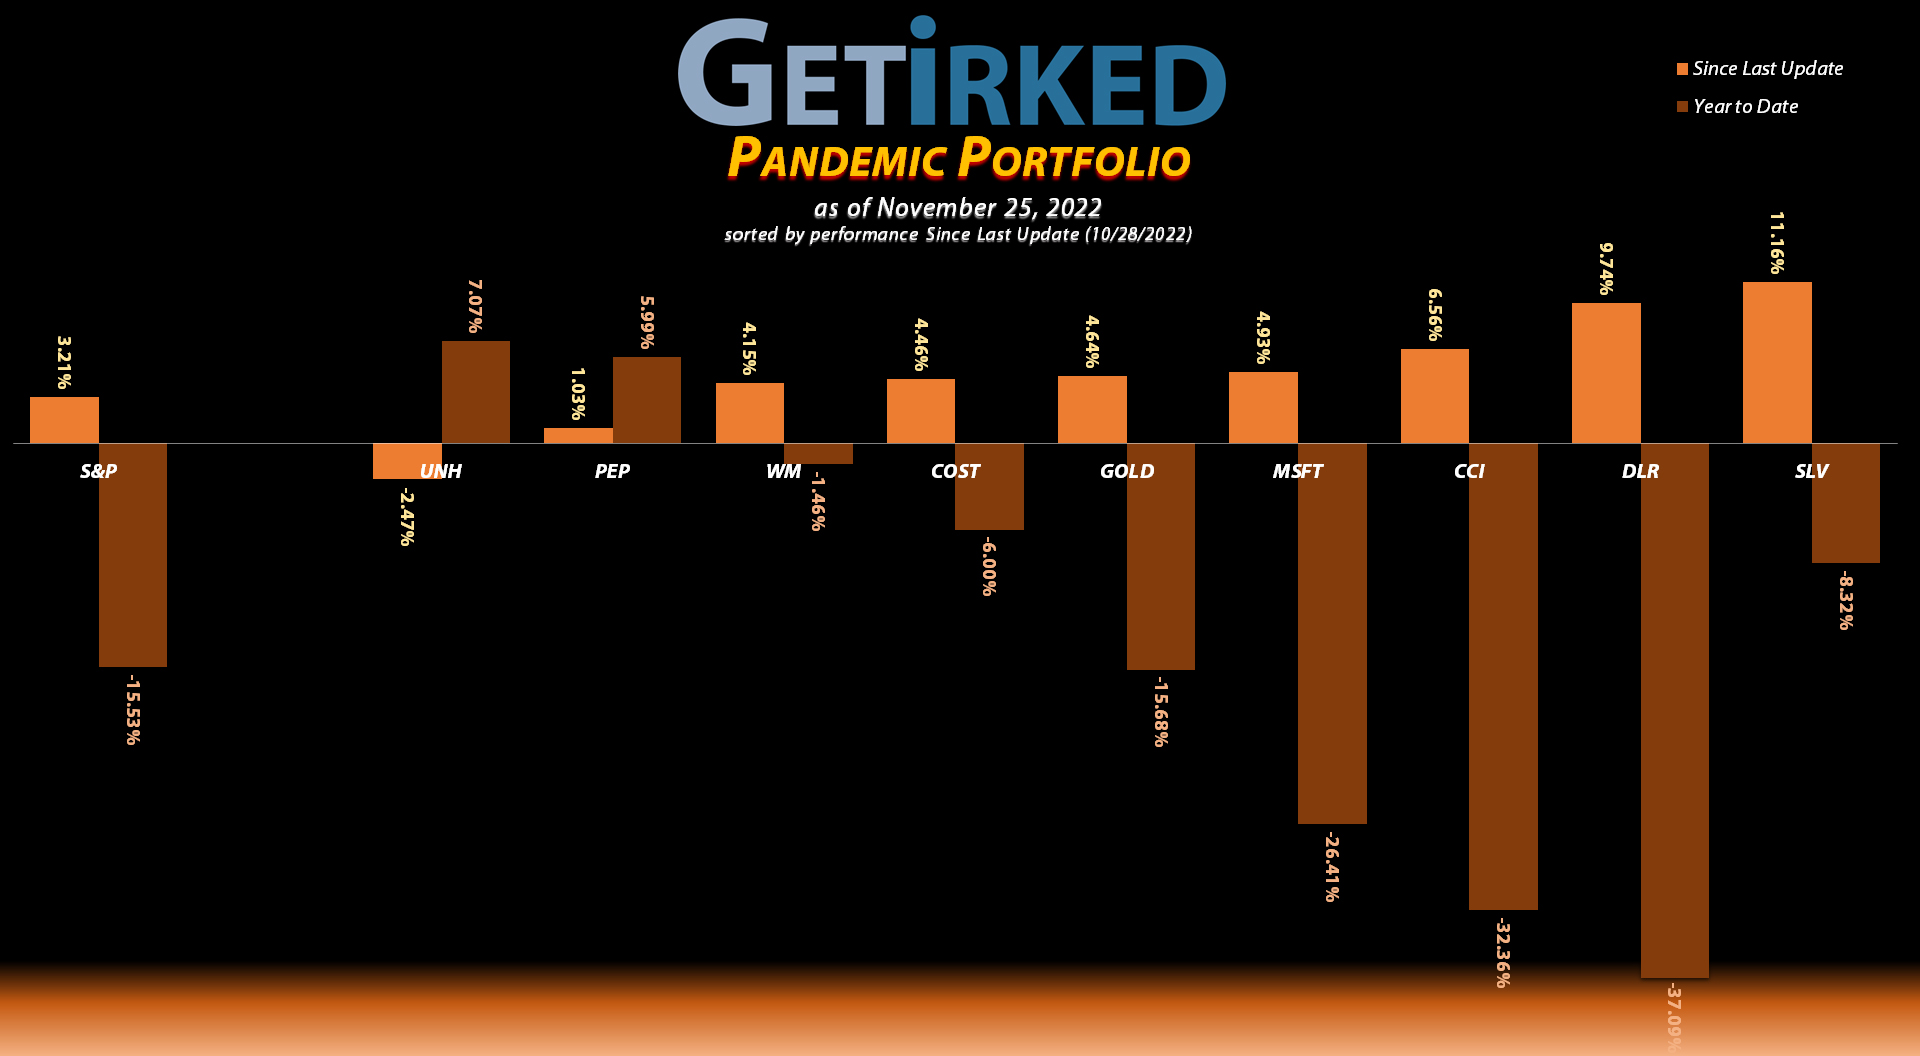 Get Irked - Pandemic Portfolio - November 25, 2022